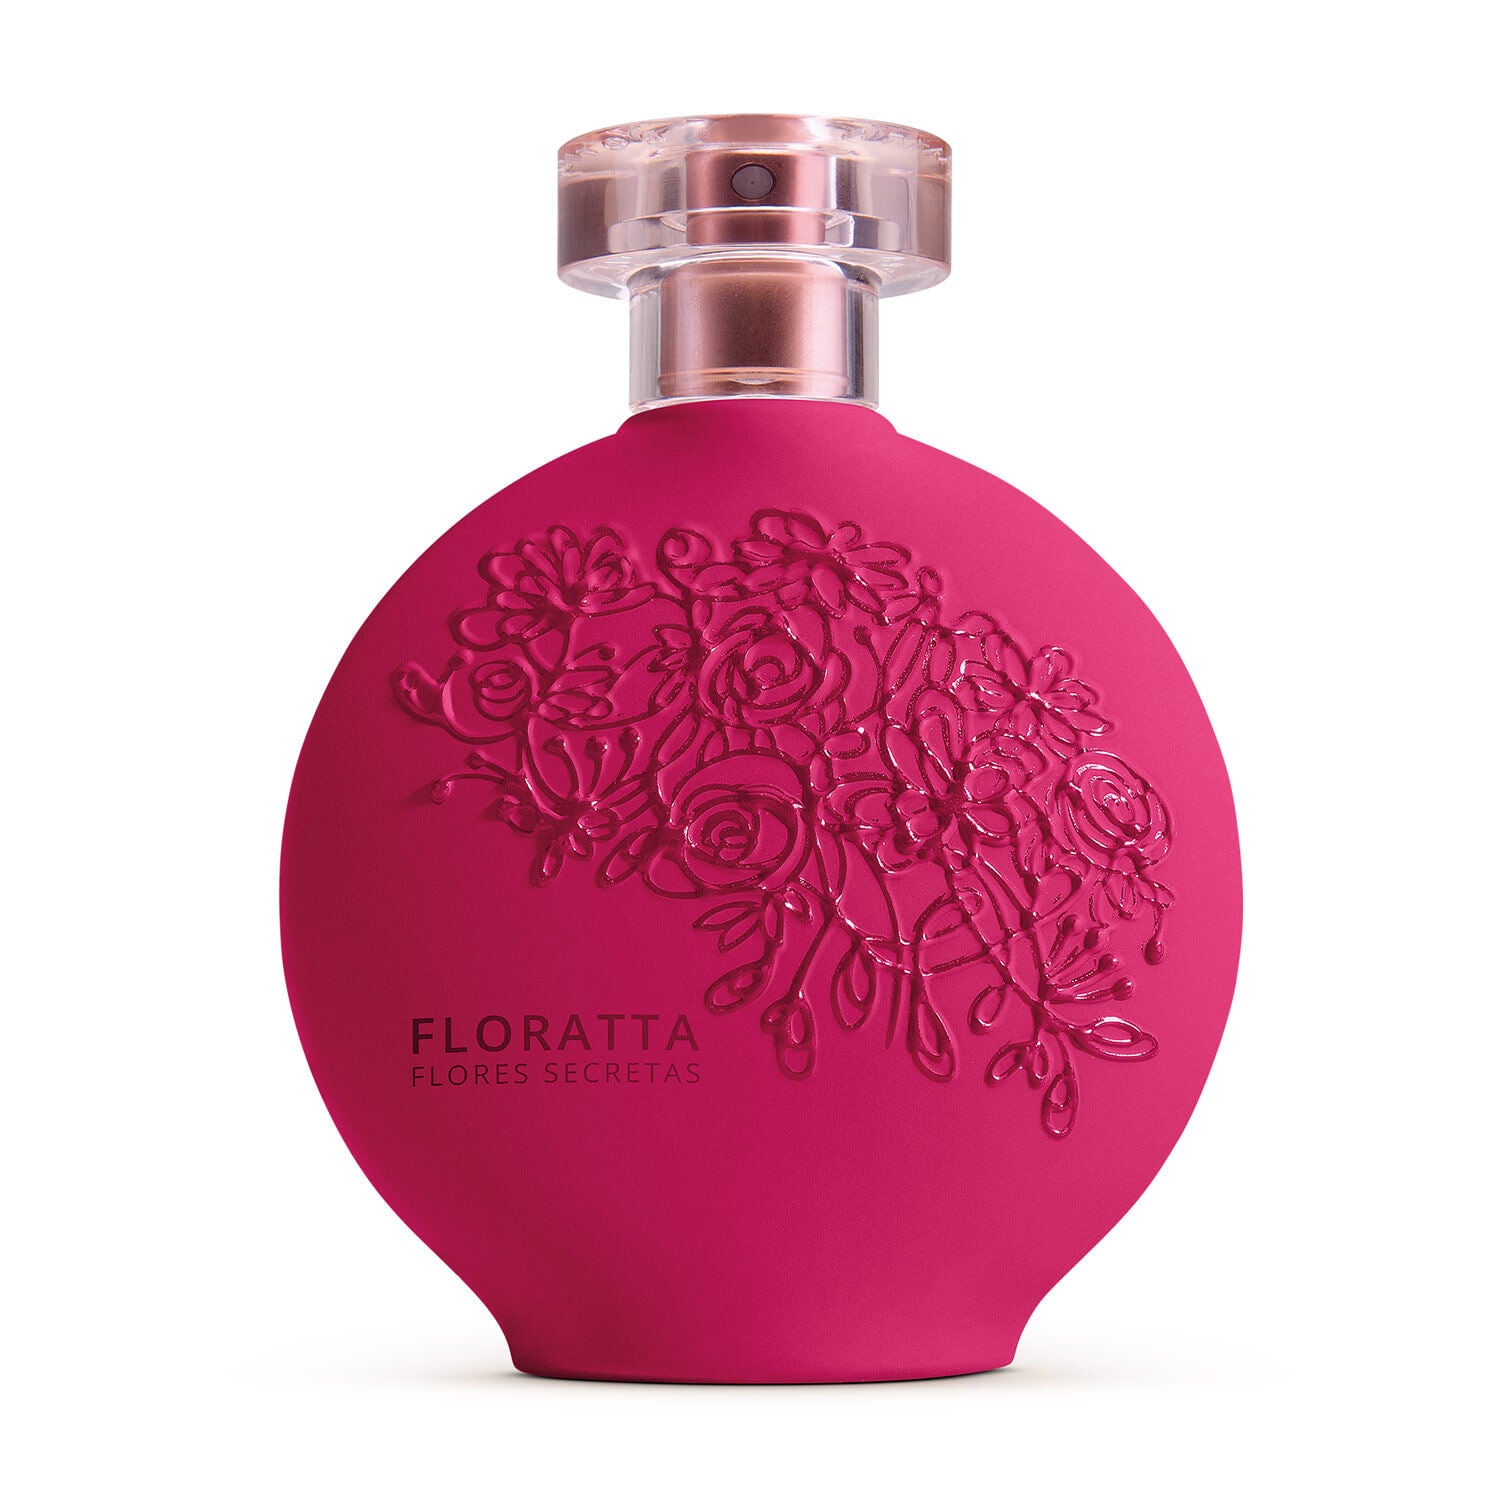 Perfume para mujer Floratta Edt Flores Secretas 75Ml en Oboticário Colombia